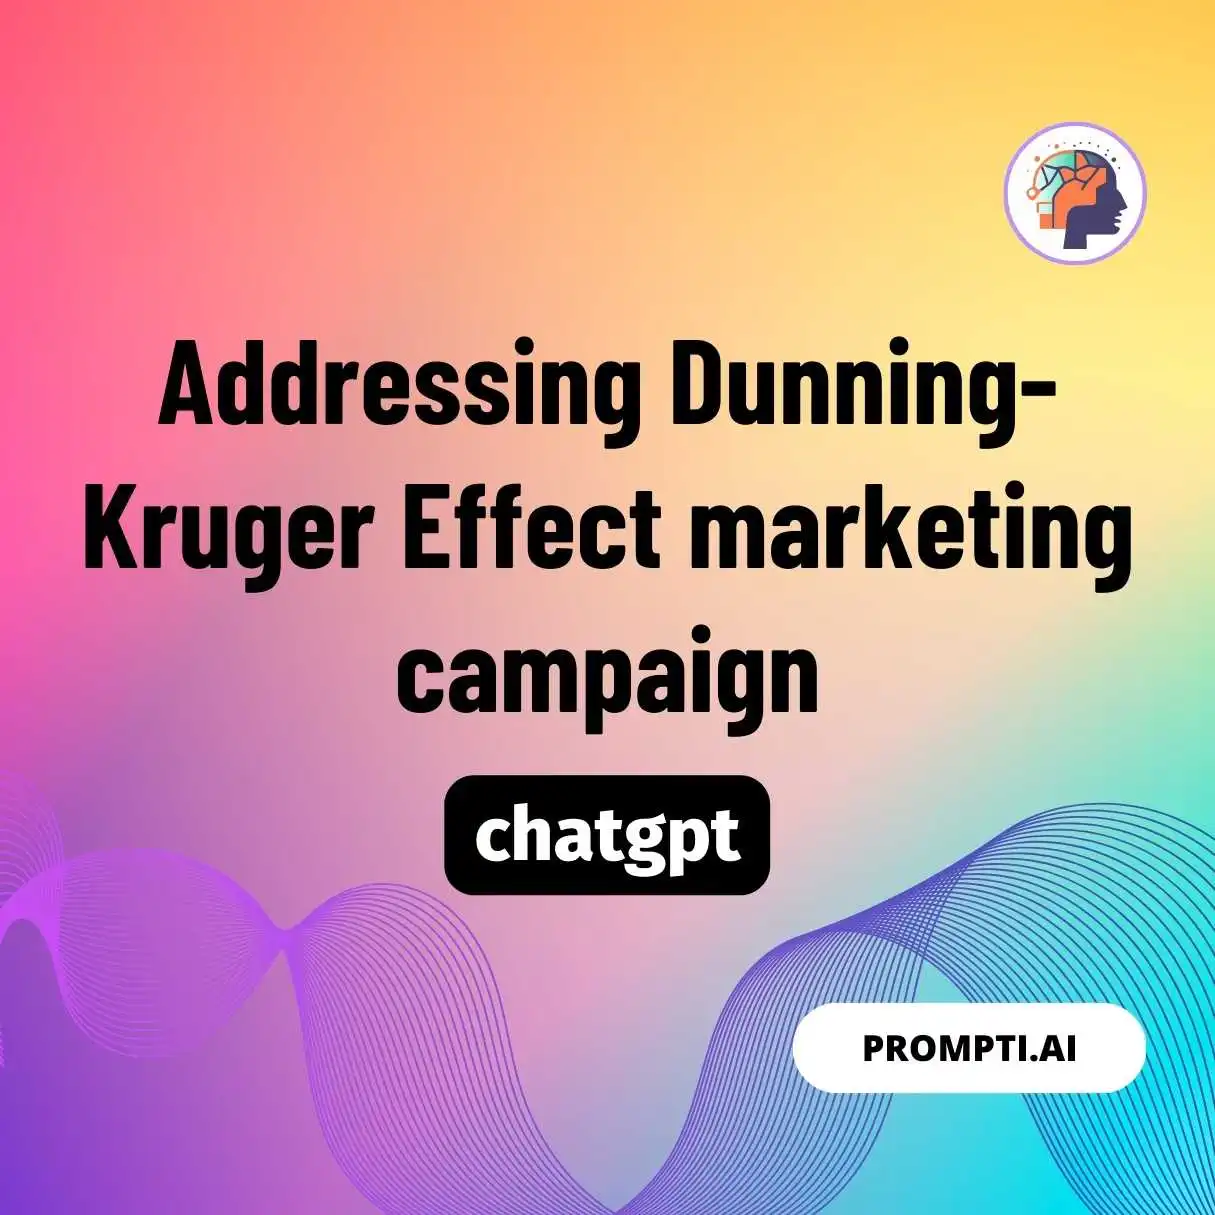 Addressing Dunning-Kruger Effect marketing campaign